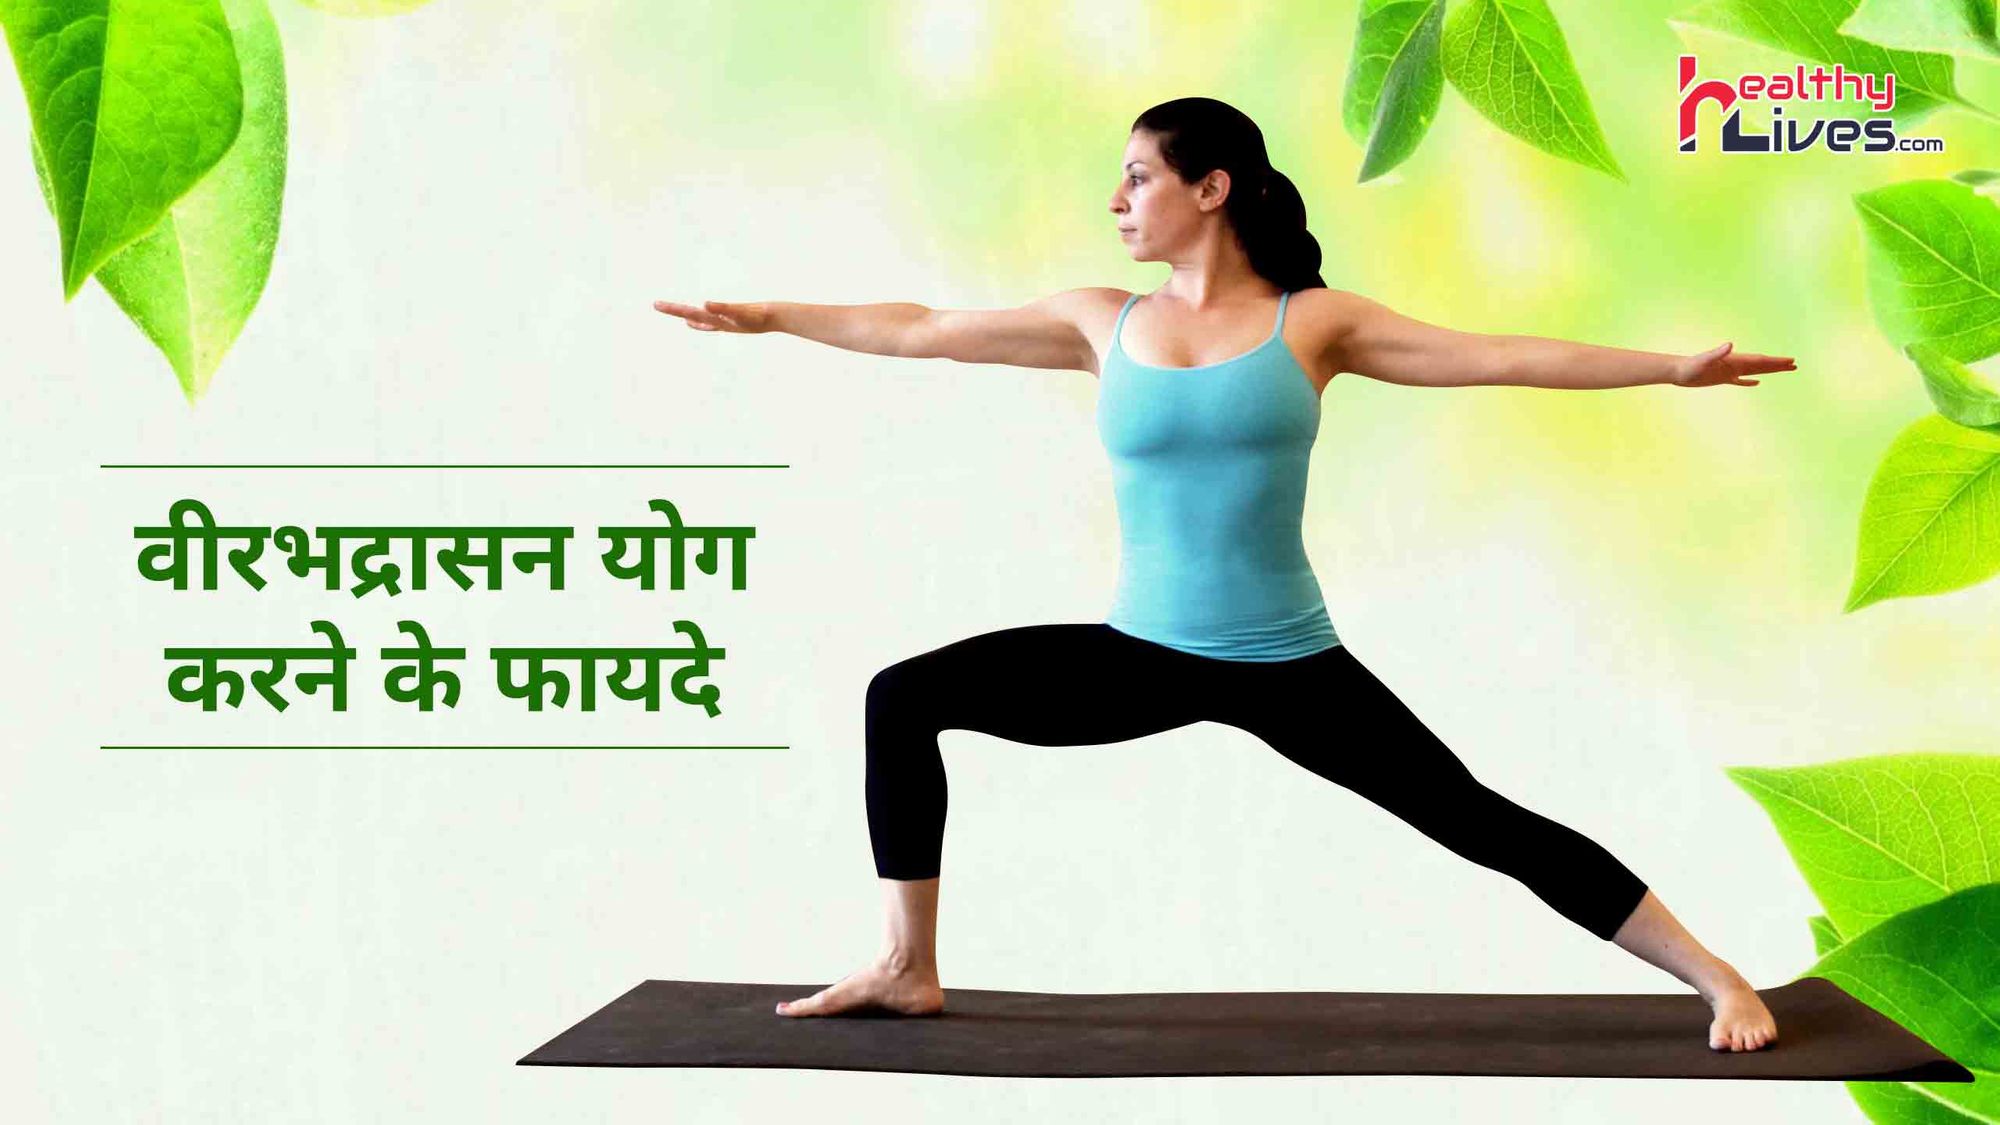 Benefit of Virabhadrasana: वीरभद्रासन योग के अभ्यास से मिलते हैं कई स्वास्थ्यवर्धक फायदे